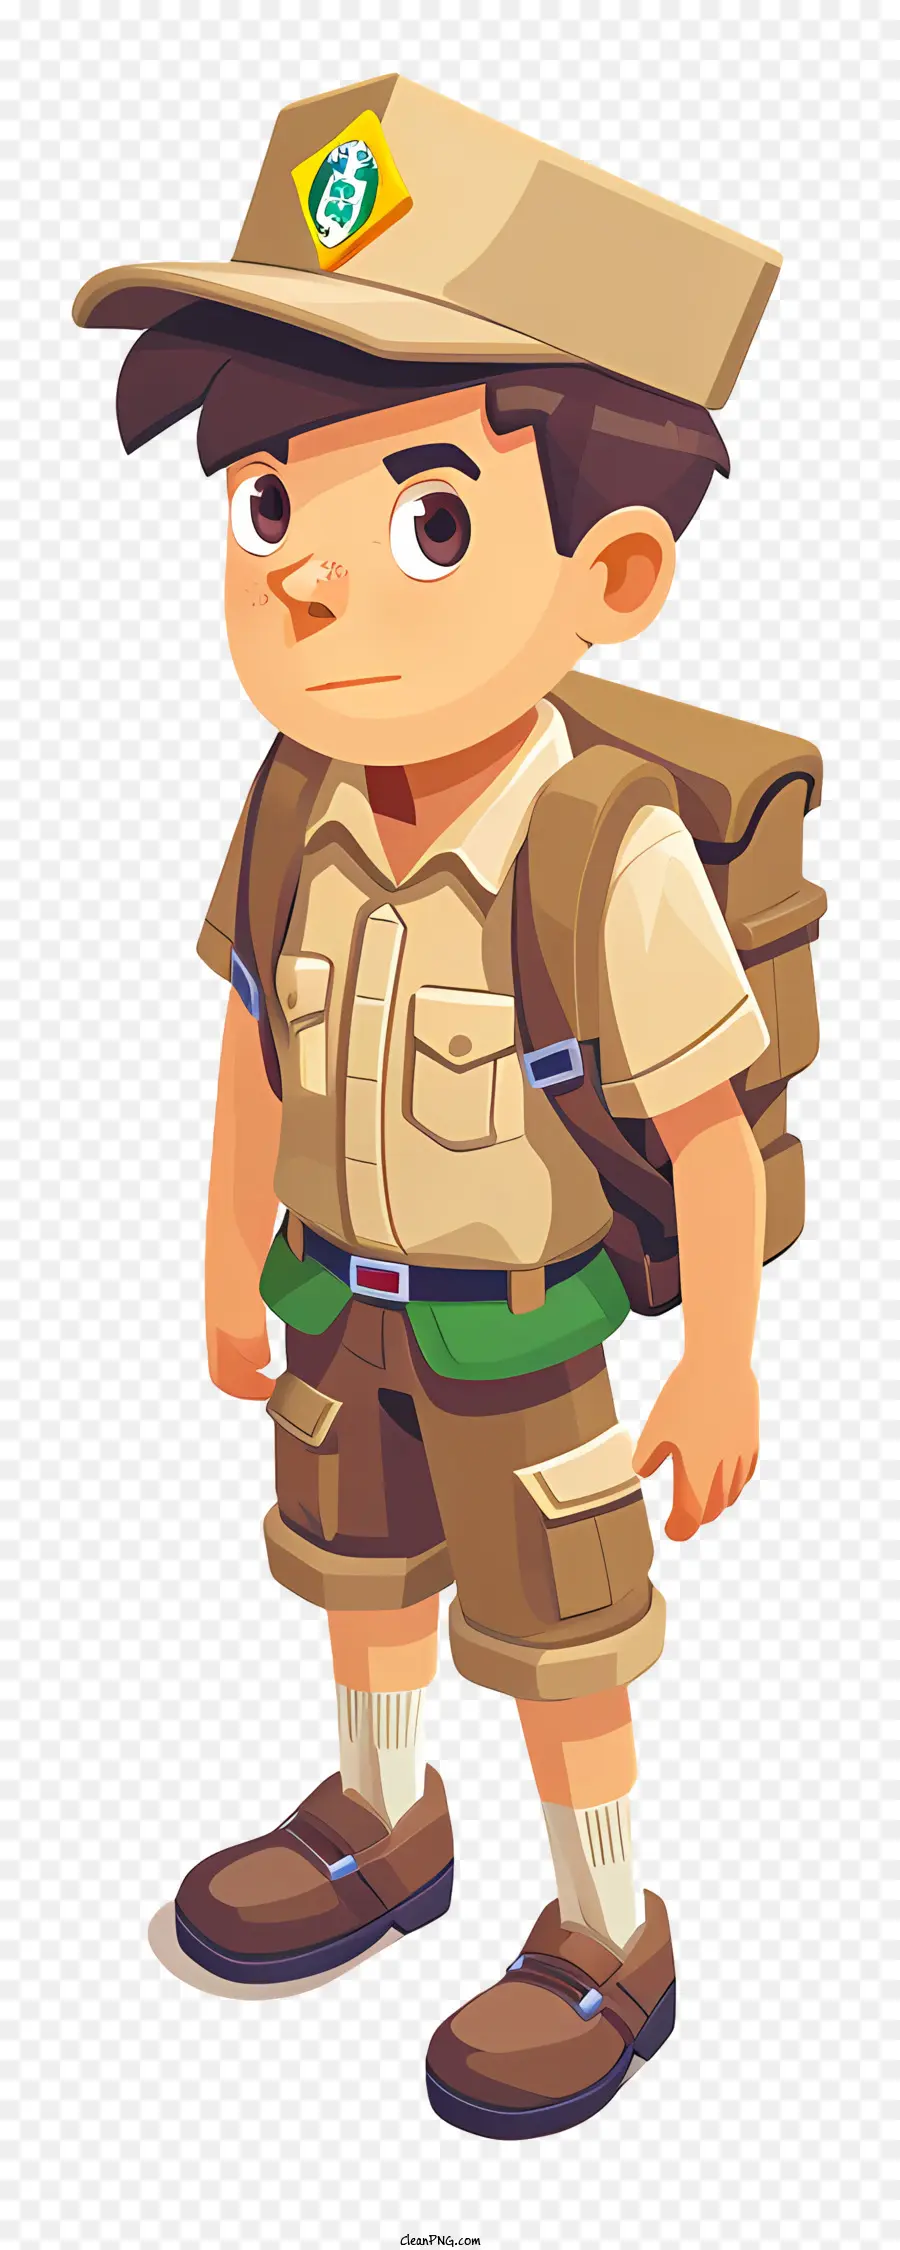 Boys Scout nhân vật hoạt hình Brown và trang phục màu xanh lá cây - Nhân vật hoạt hình nghiêm túc với ba lô đứng trên sân